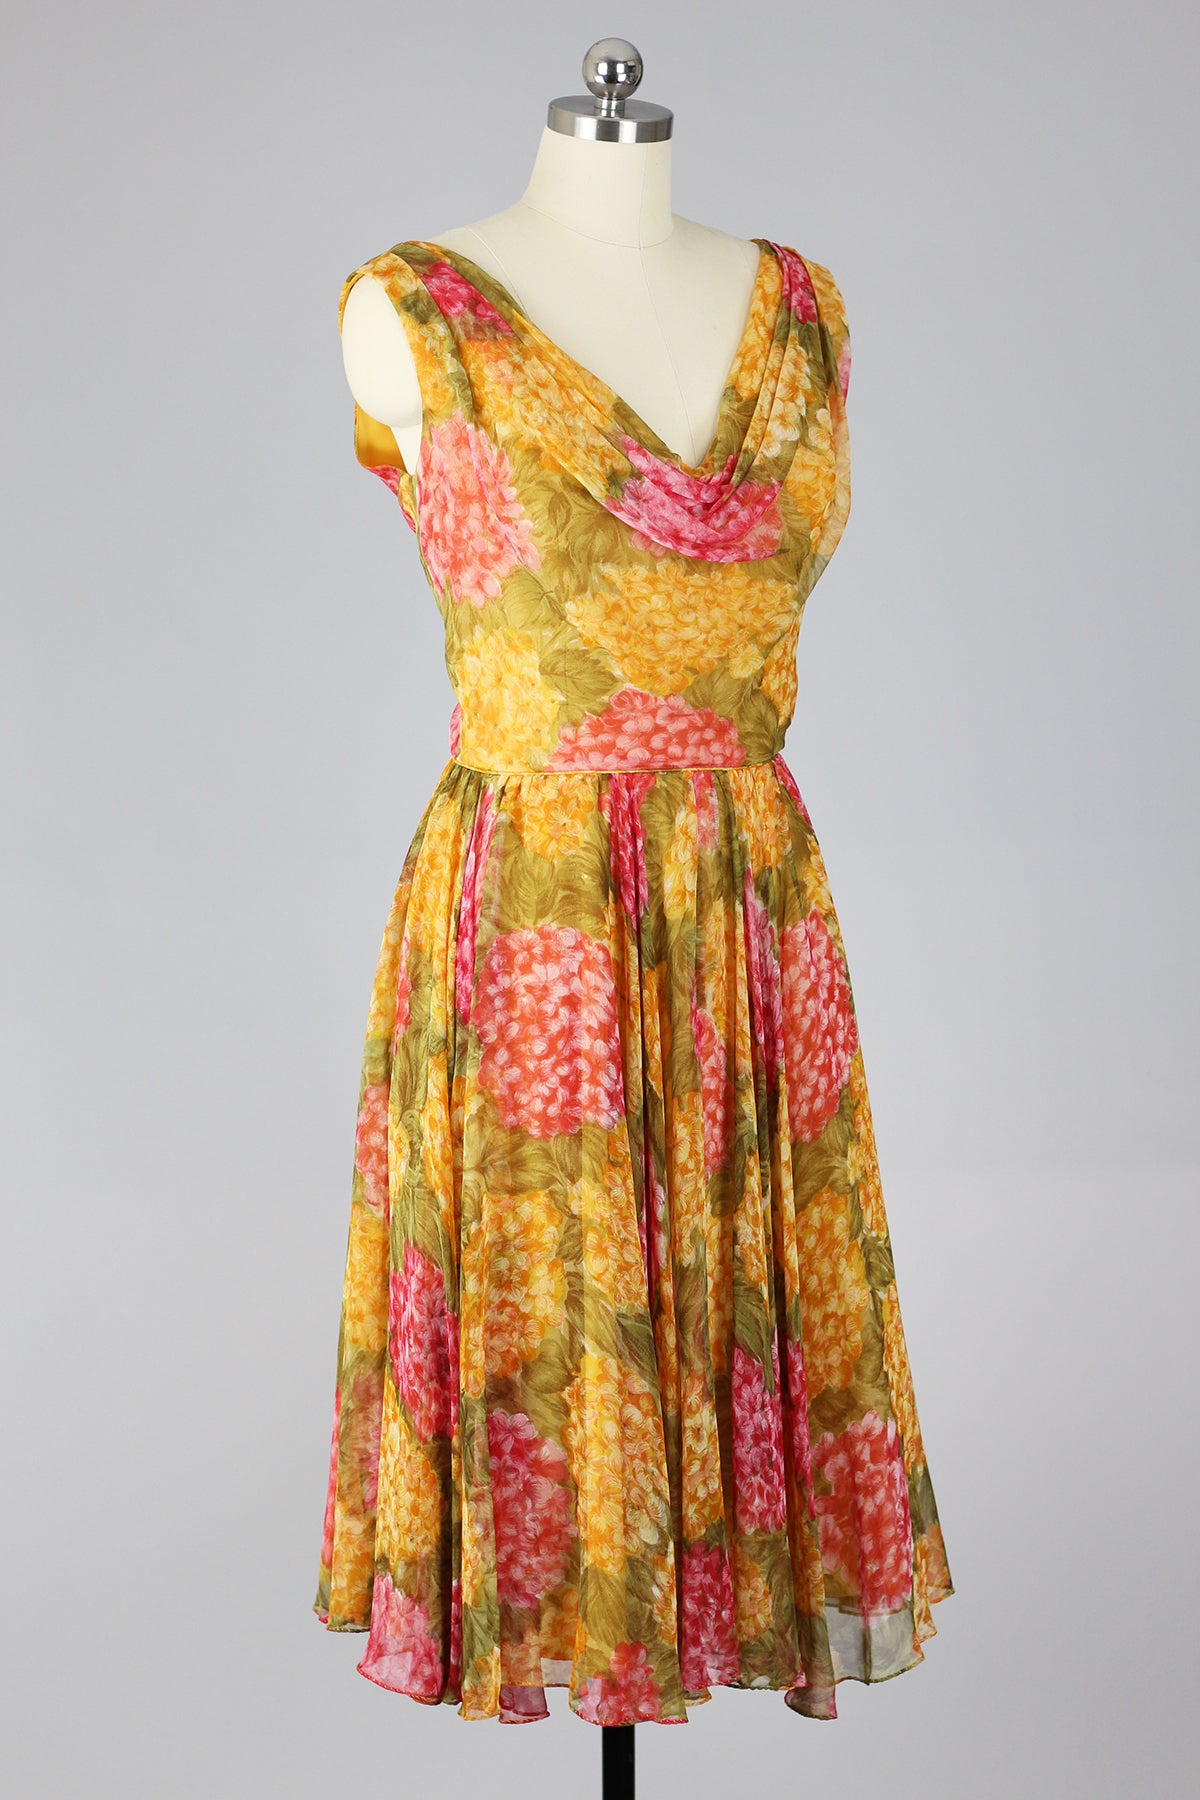 Marigold Majesty 1960s Chiffon Swing Dress